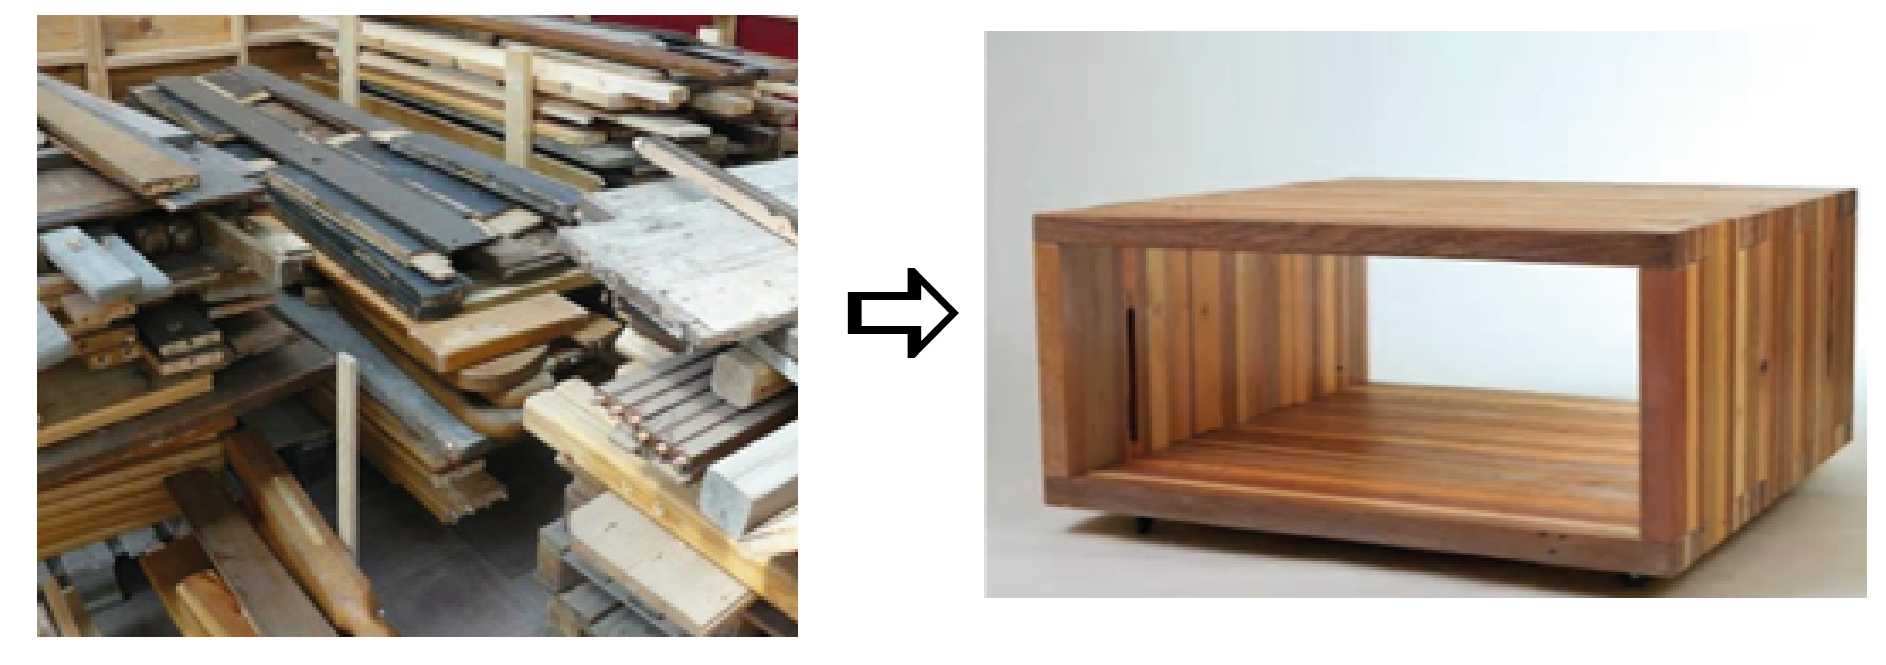 bois collecté pour être recyclé en table basse